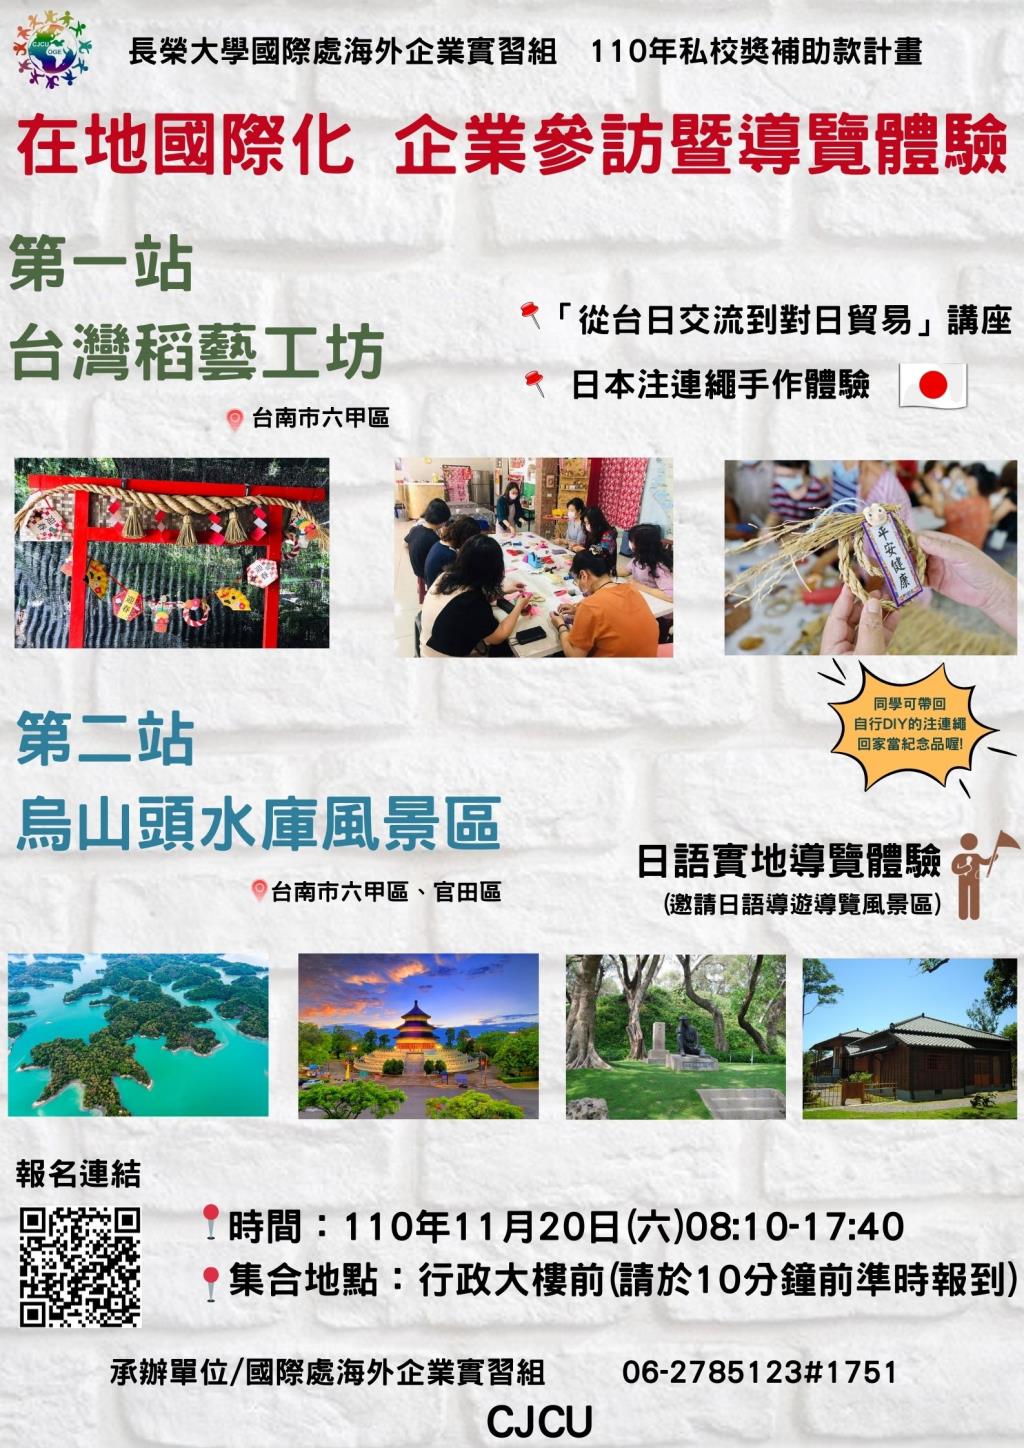 [活動] 【在地國際化】企業參訪暨導覽體驗:台灣稻藝工房、烏山頭水庫風景區